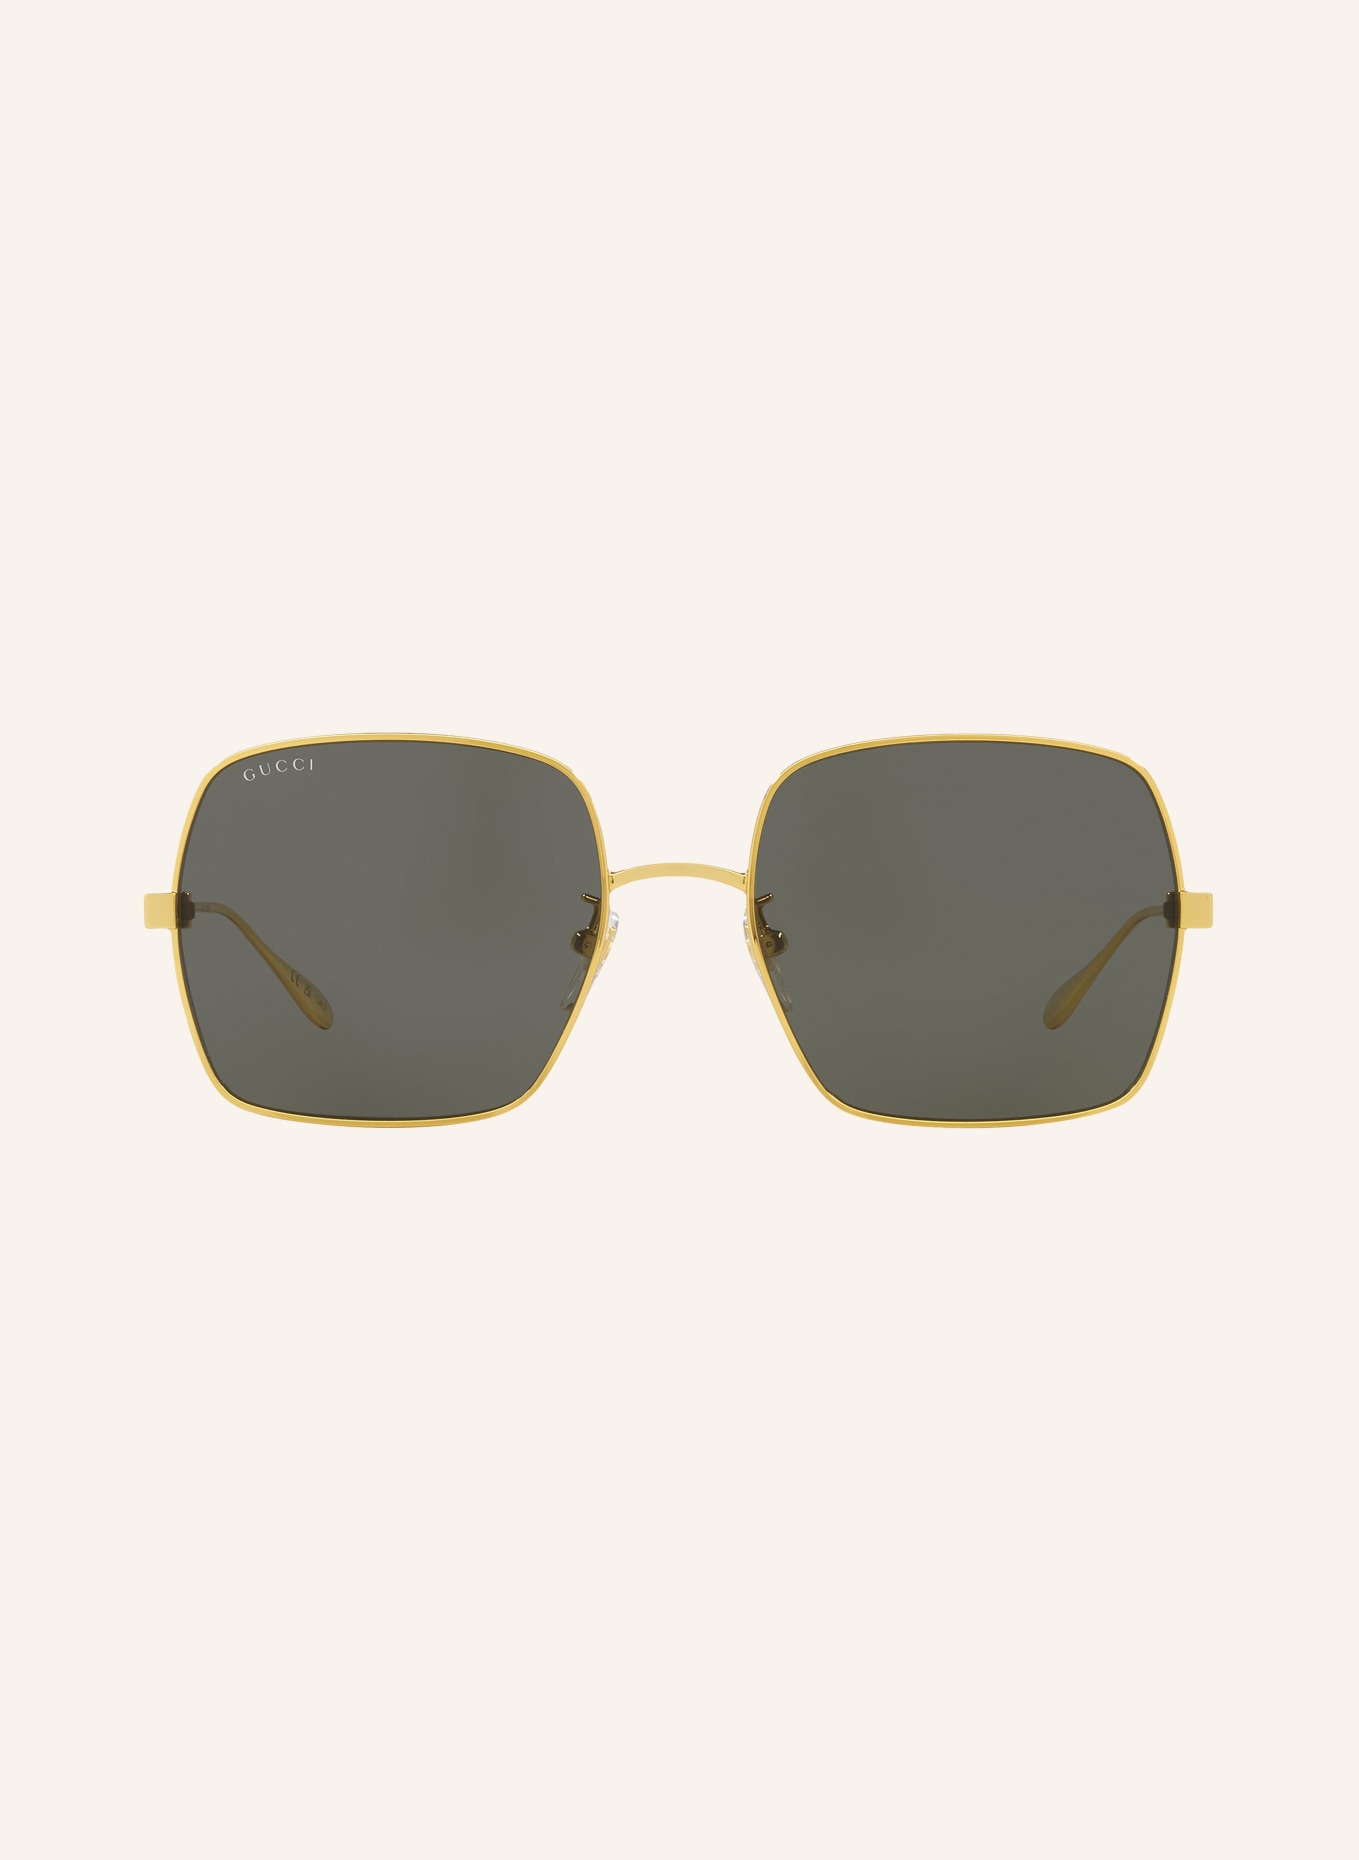 GUCCI Sunglasses GC002133, Color: 2300L1 - GOLD/GRAY (Image 2)